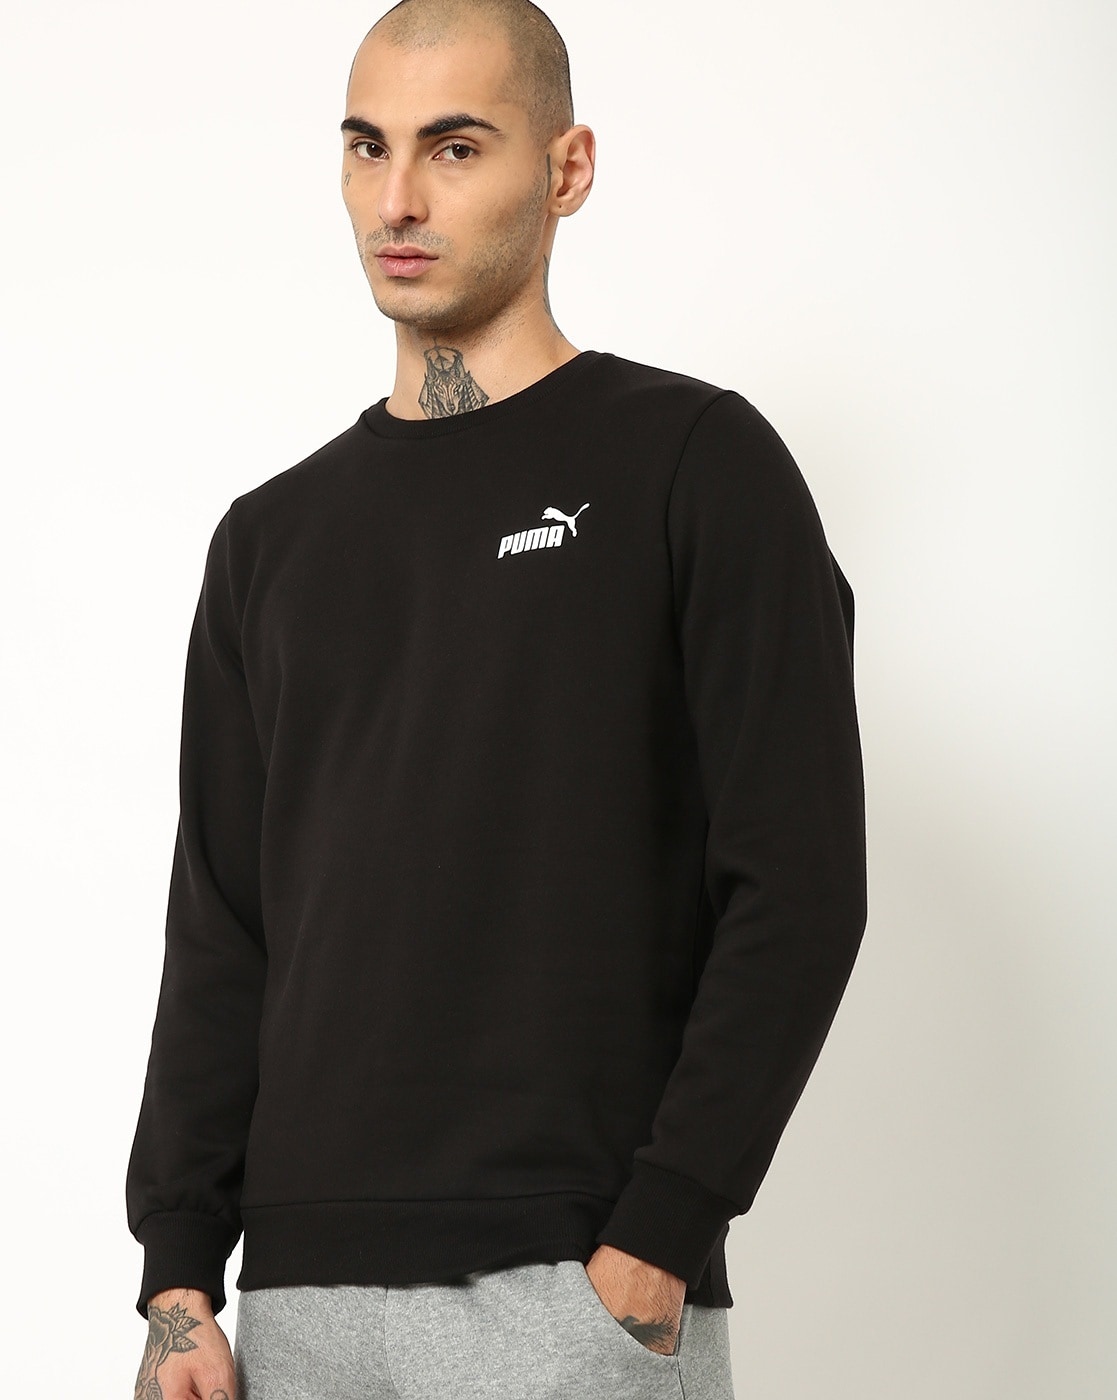 Buy Black Sweatshirt & Online Men Hoodies by Puma for